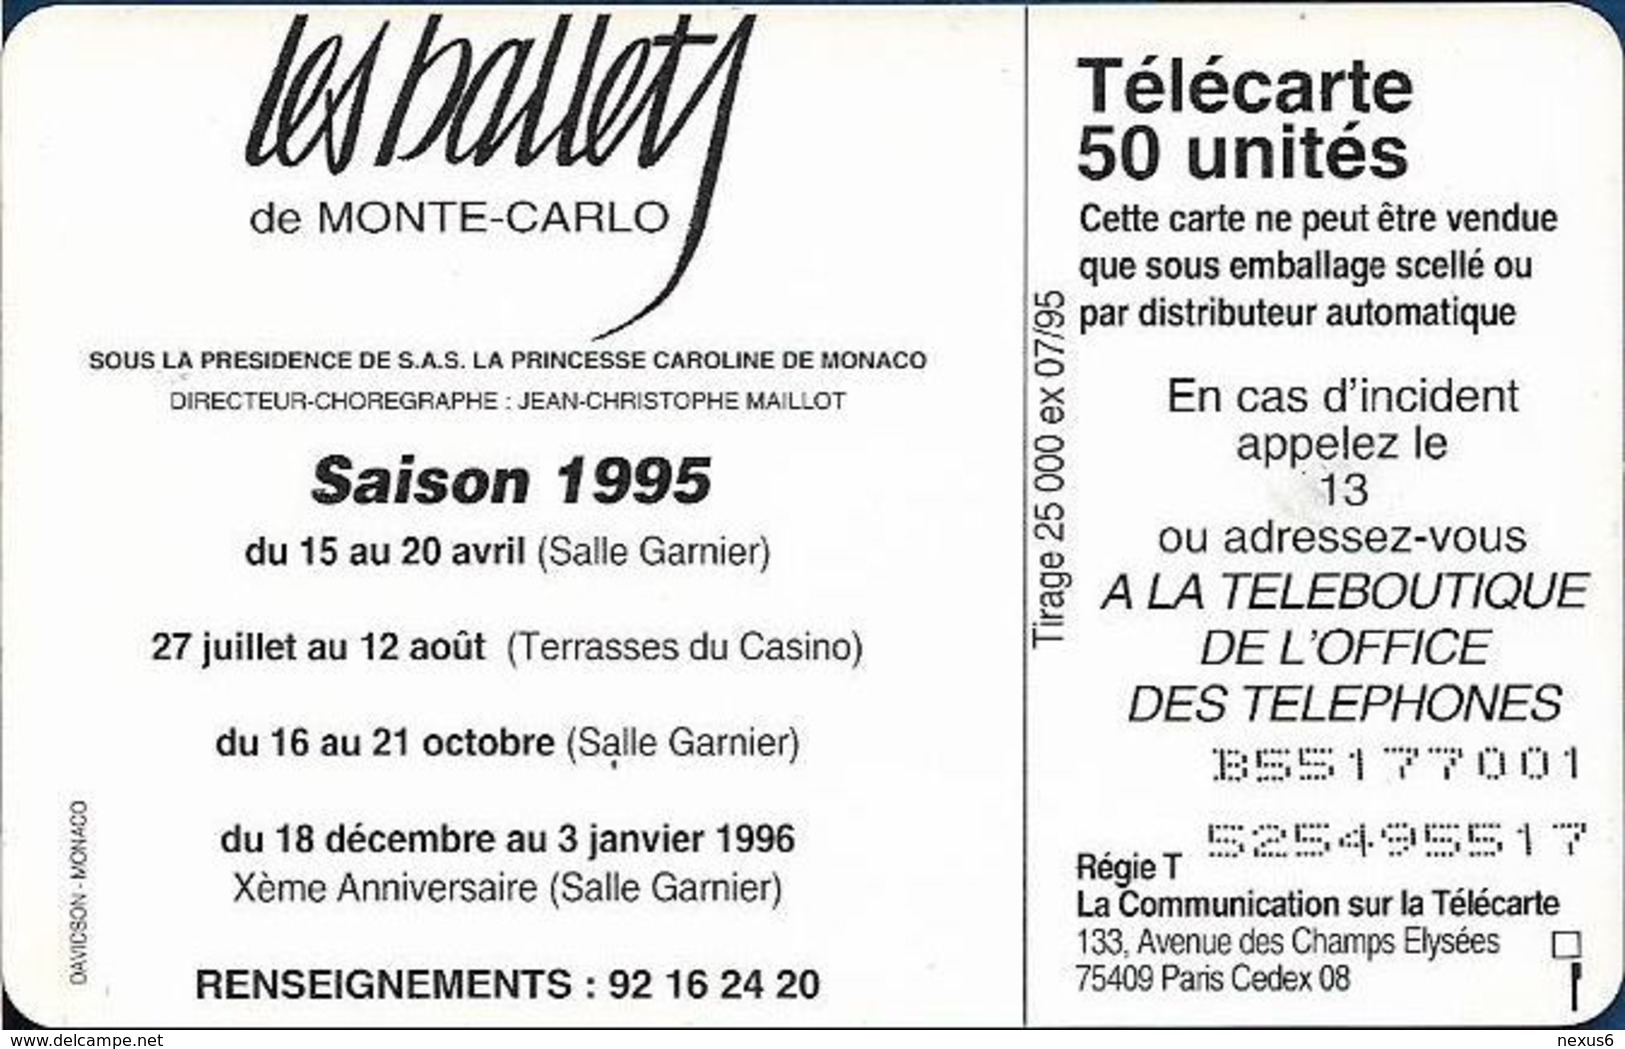 Monaco - MF36 - Ballets - Cn. B55177001, Gem1A Symm. Black, NO Transp. Moreno, 07.1995, 50Units, 25.000ex, Used - Monaco